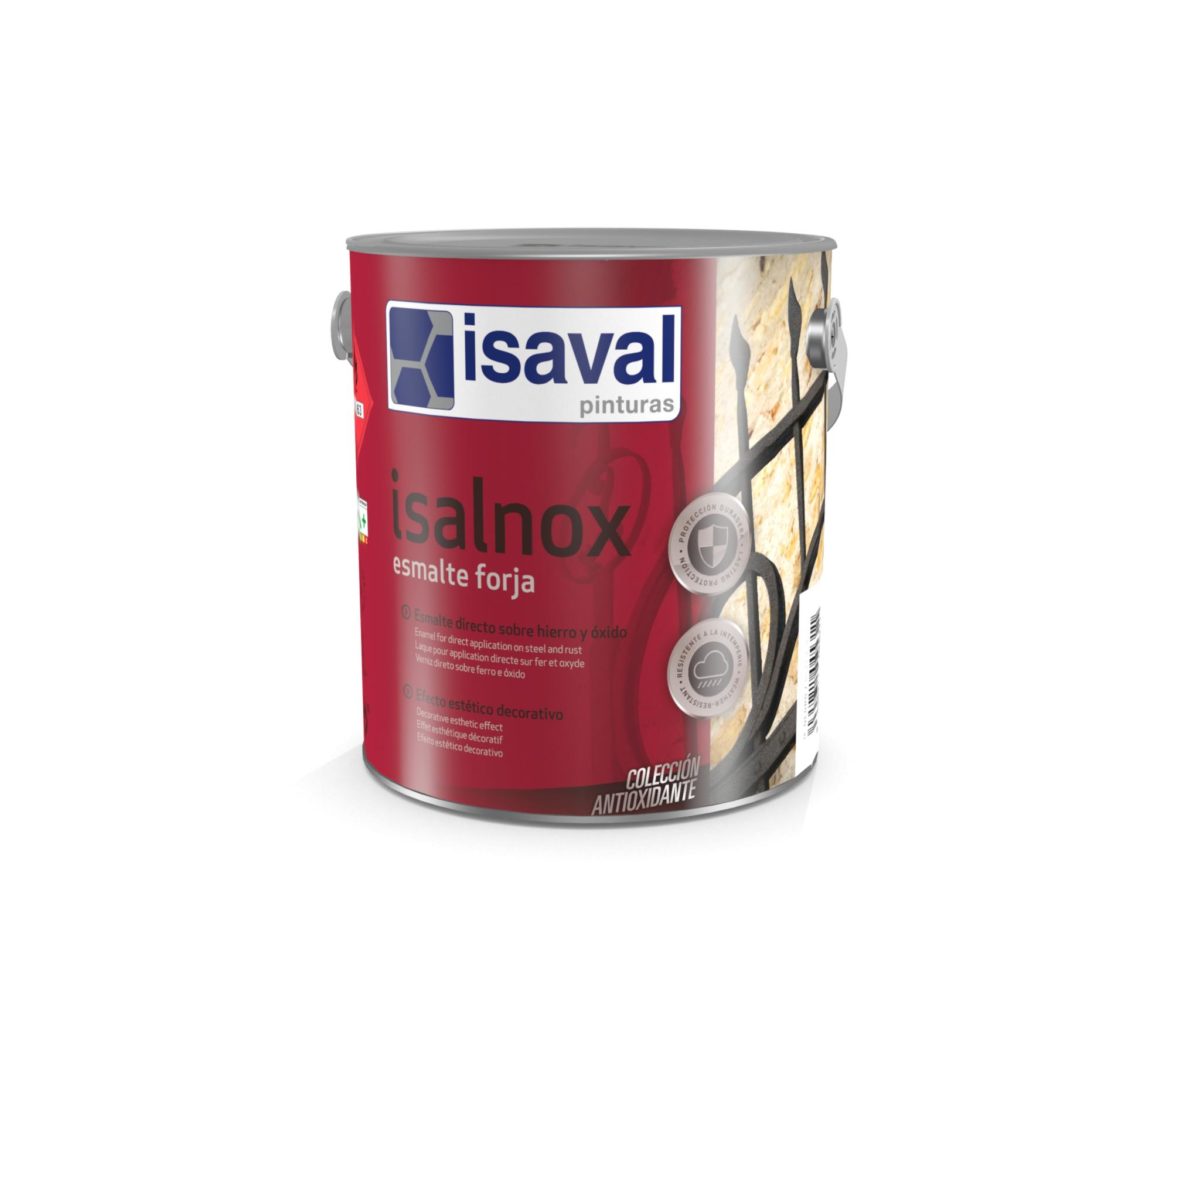 Isalnox Esmalte forja. Esmalte sintético anticorrosivo de Pinturas Isaval